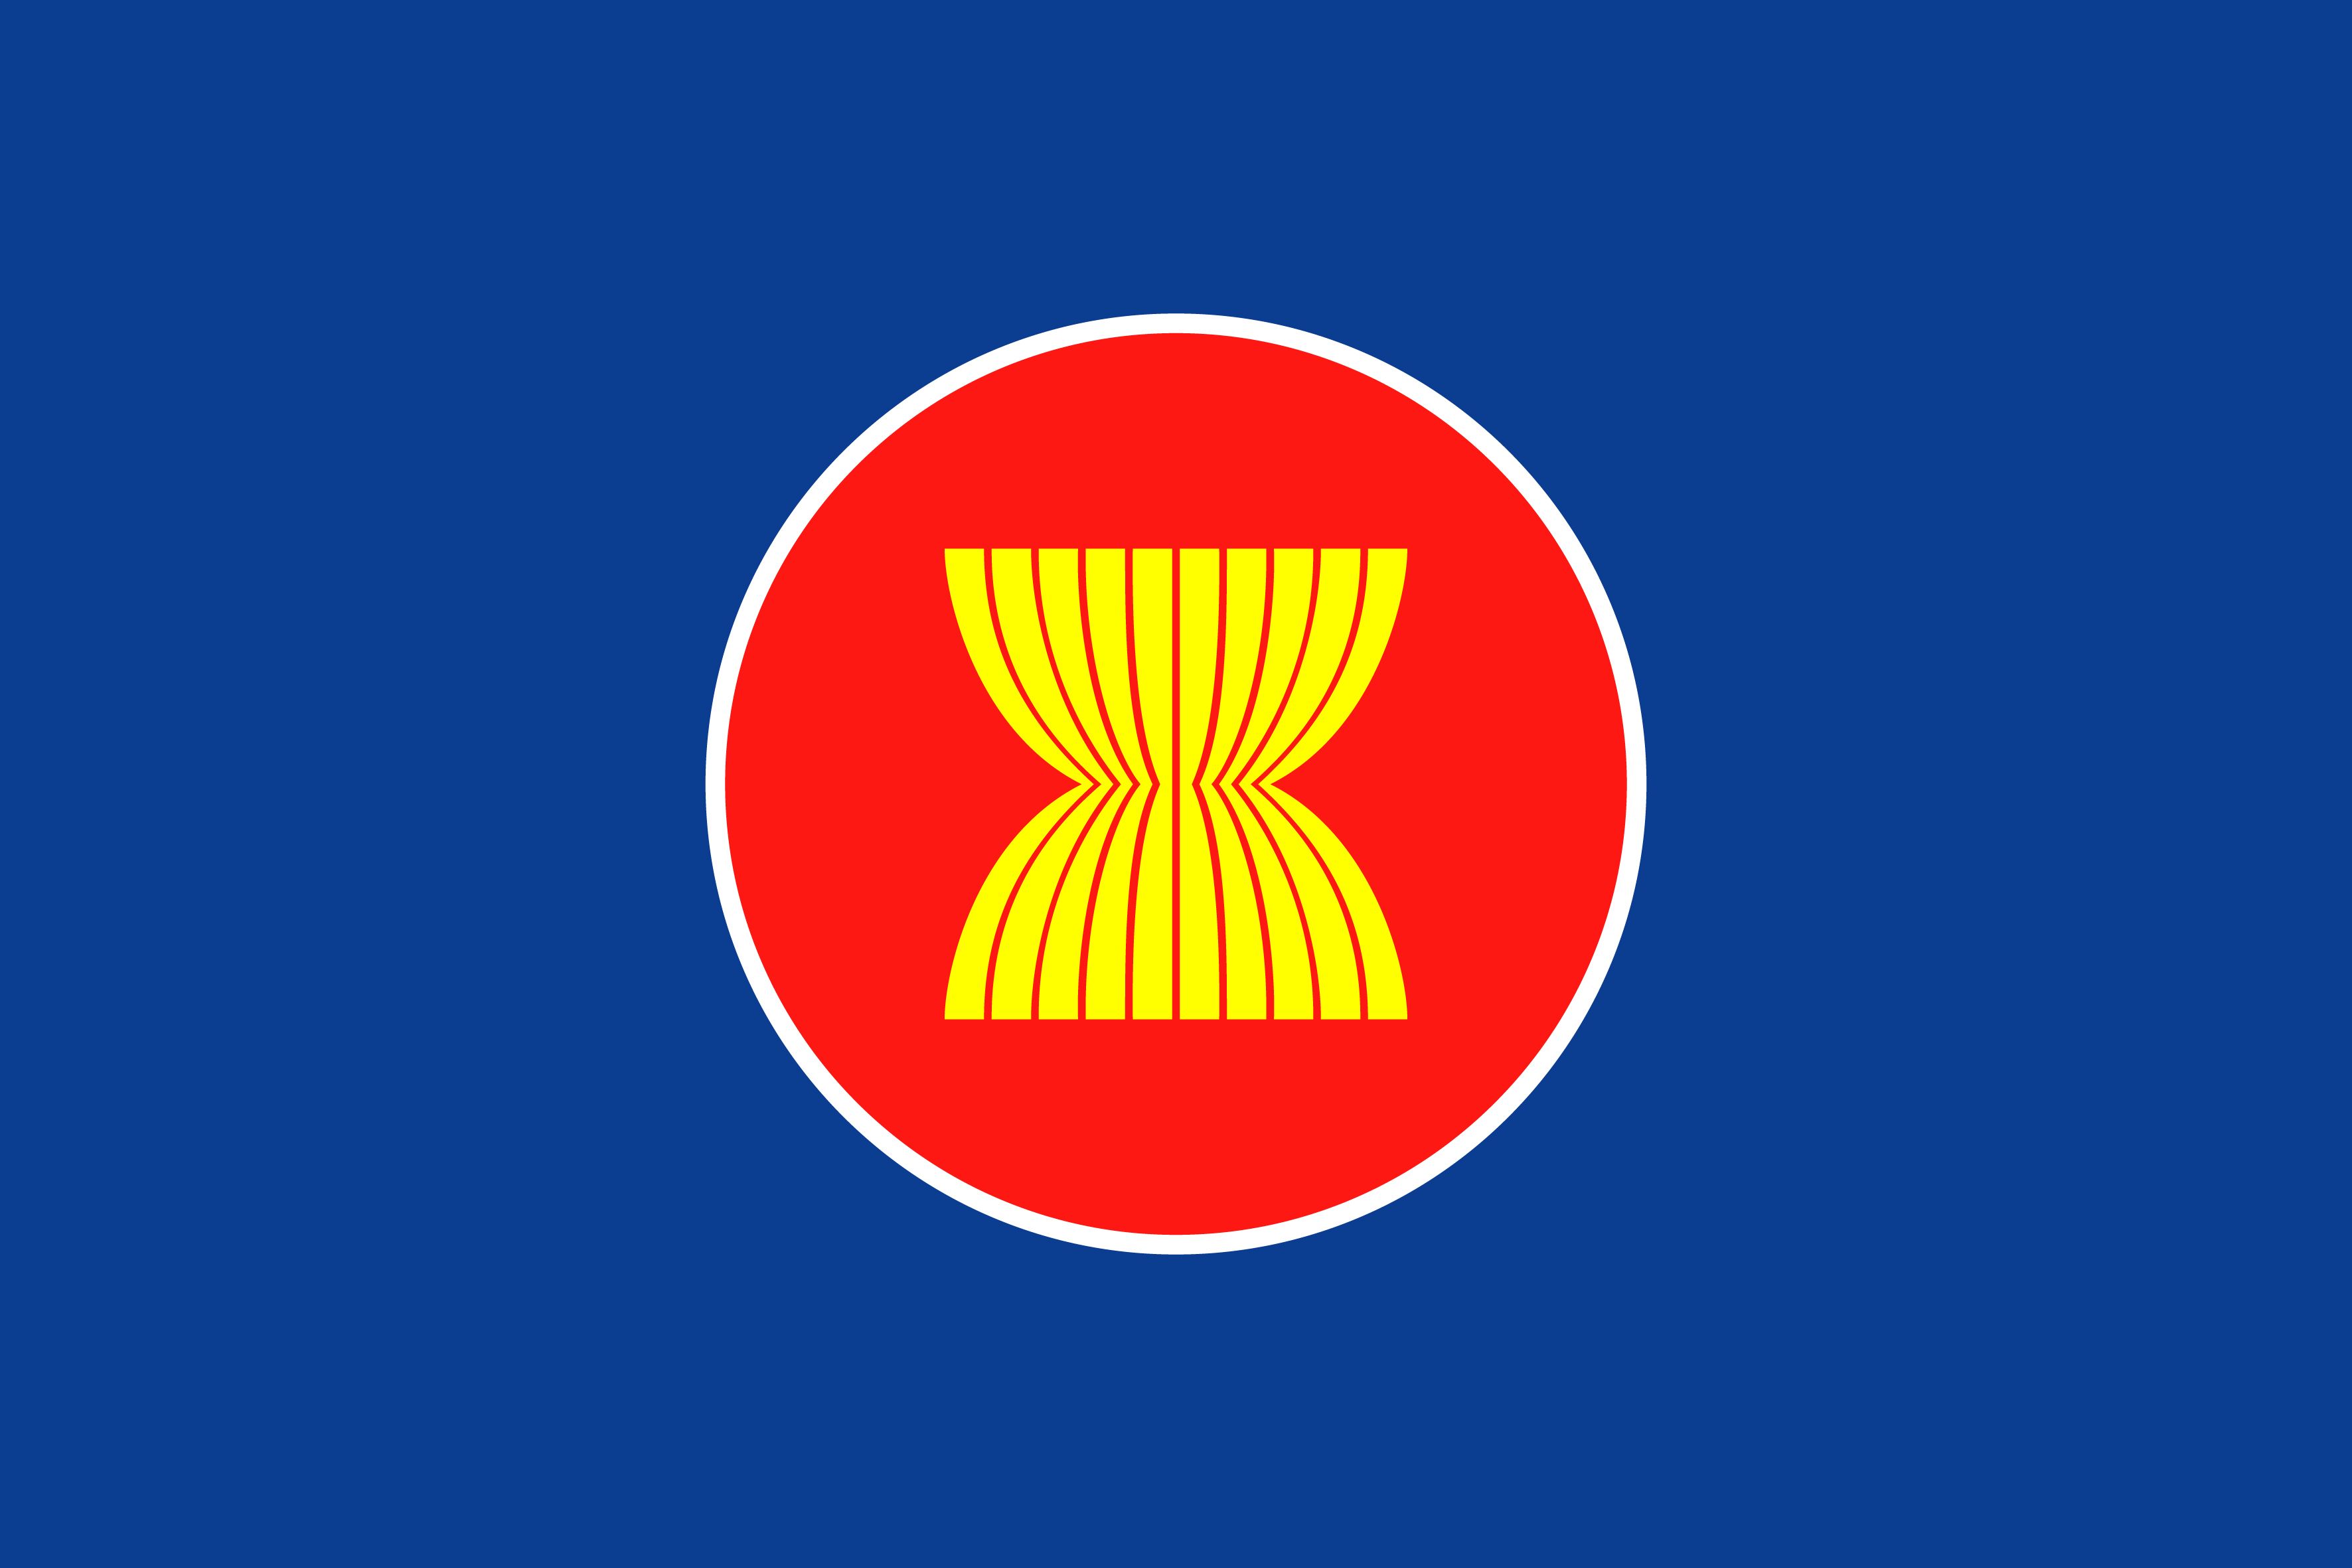 Lá cờ ASEAN mang ý nghĩa to lớn trong việc thể hiện sự đoàn kết, hợp tác giữa các quốc gia trong khu vực. Năm 2024, ASEAN đã phát triển mạnh mẽ với nhiều cơ hội đầu tư mới, tăng trưởng kinh tế ổn định và cải thiện đời sống của người dân. Hãy truy cập vào hình ảnh này để cùng tìm hiểu về sự tiến bộ đáng kinh ngạc của ASEAN!